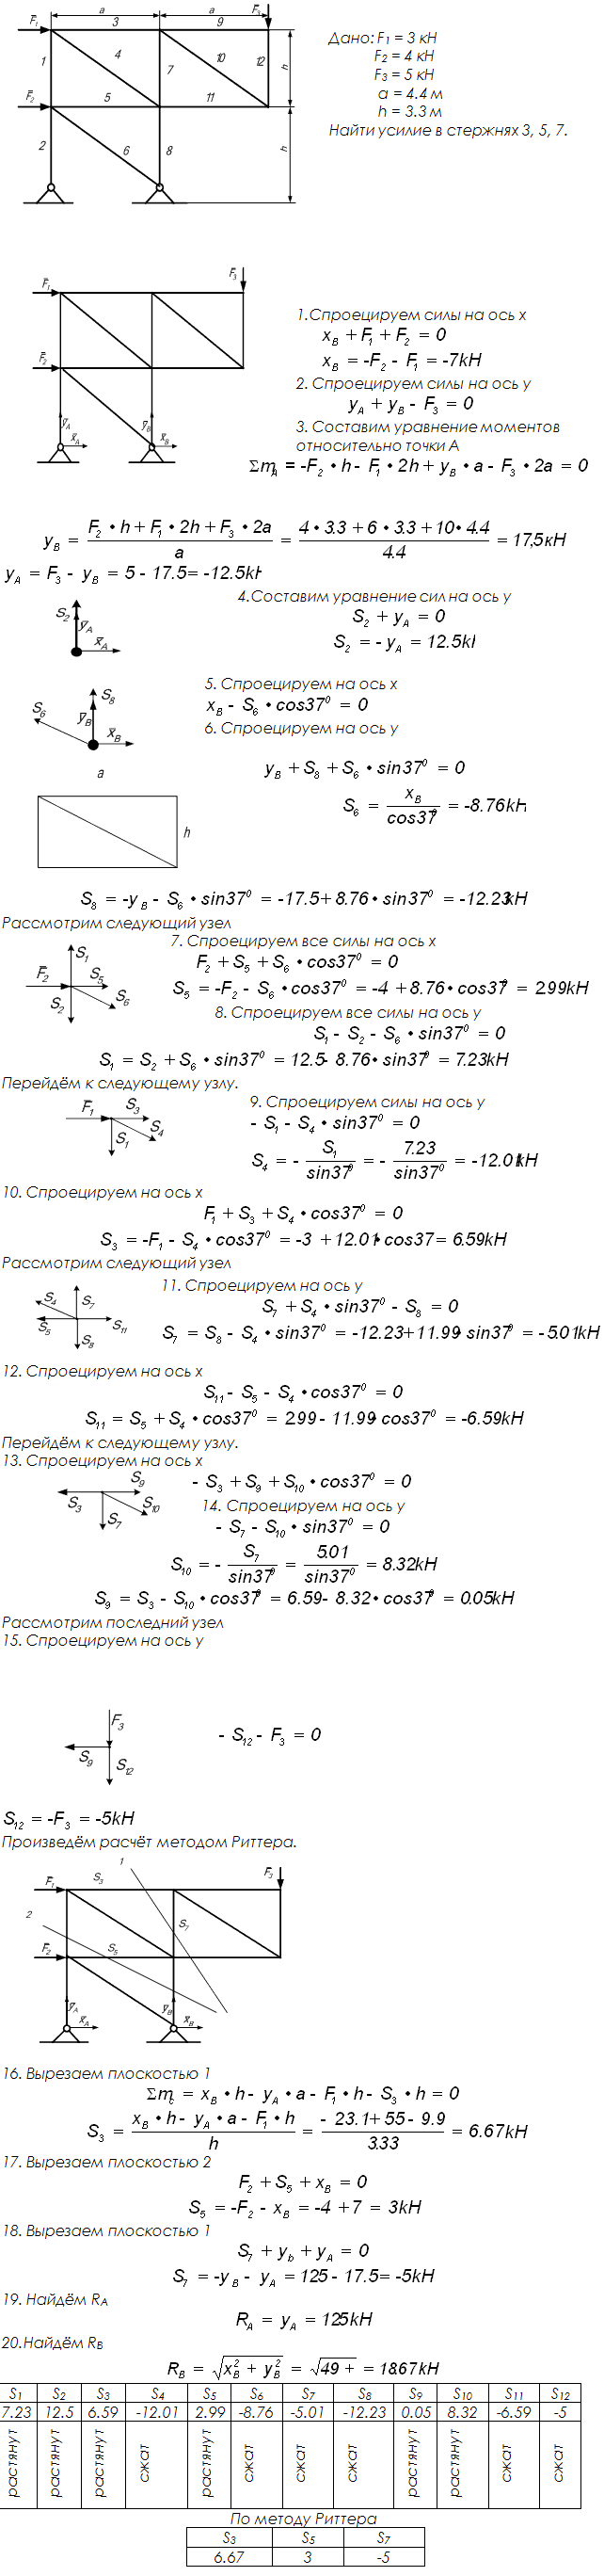 Задание C2 вариант 10. P1=3 кН, P2=4 кН, P3=5 кН, a=4,4 м, h=3,3 м, номер стержня 3, 5, 7.